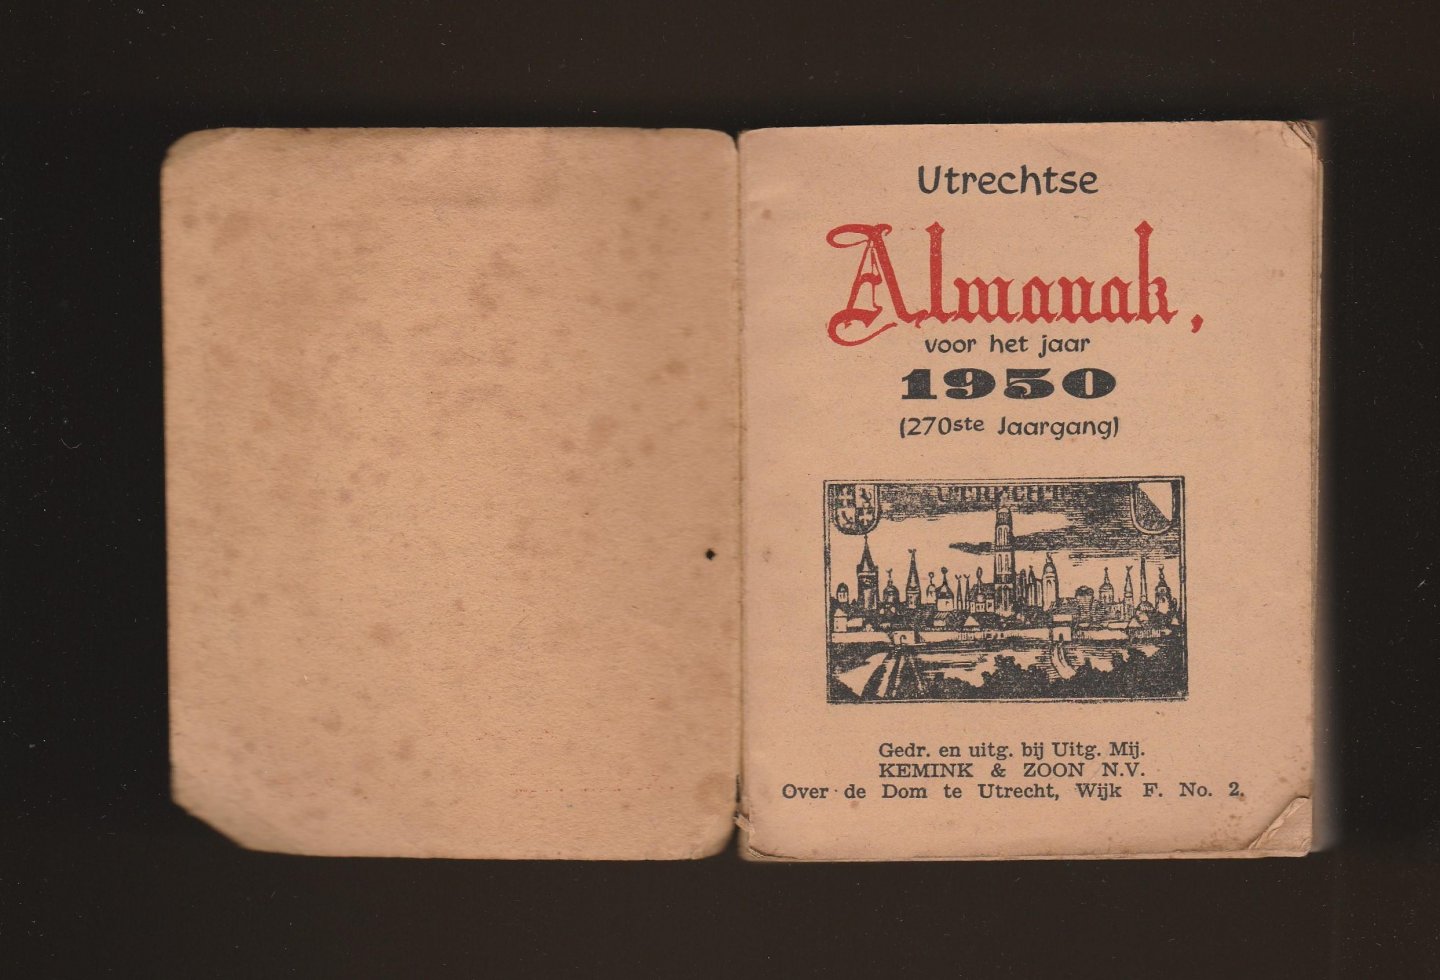  - Utrechtsche Almanak voor het jaar 1950